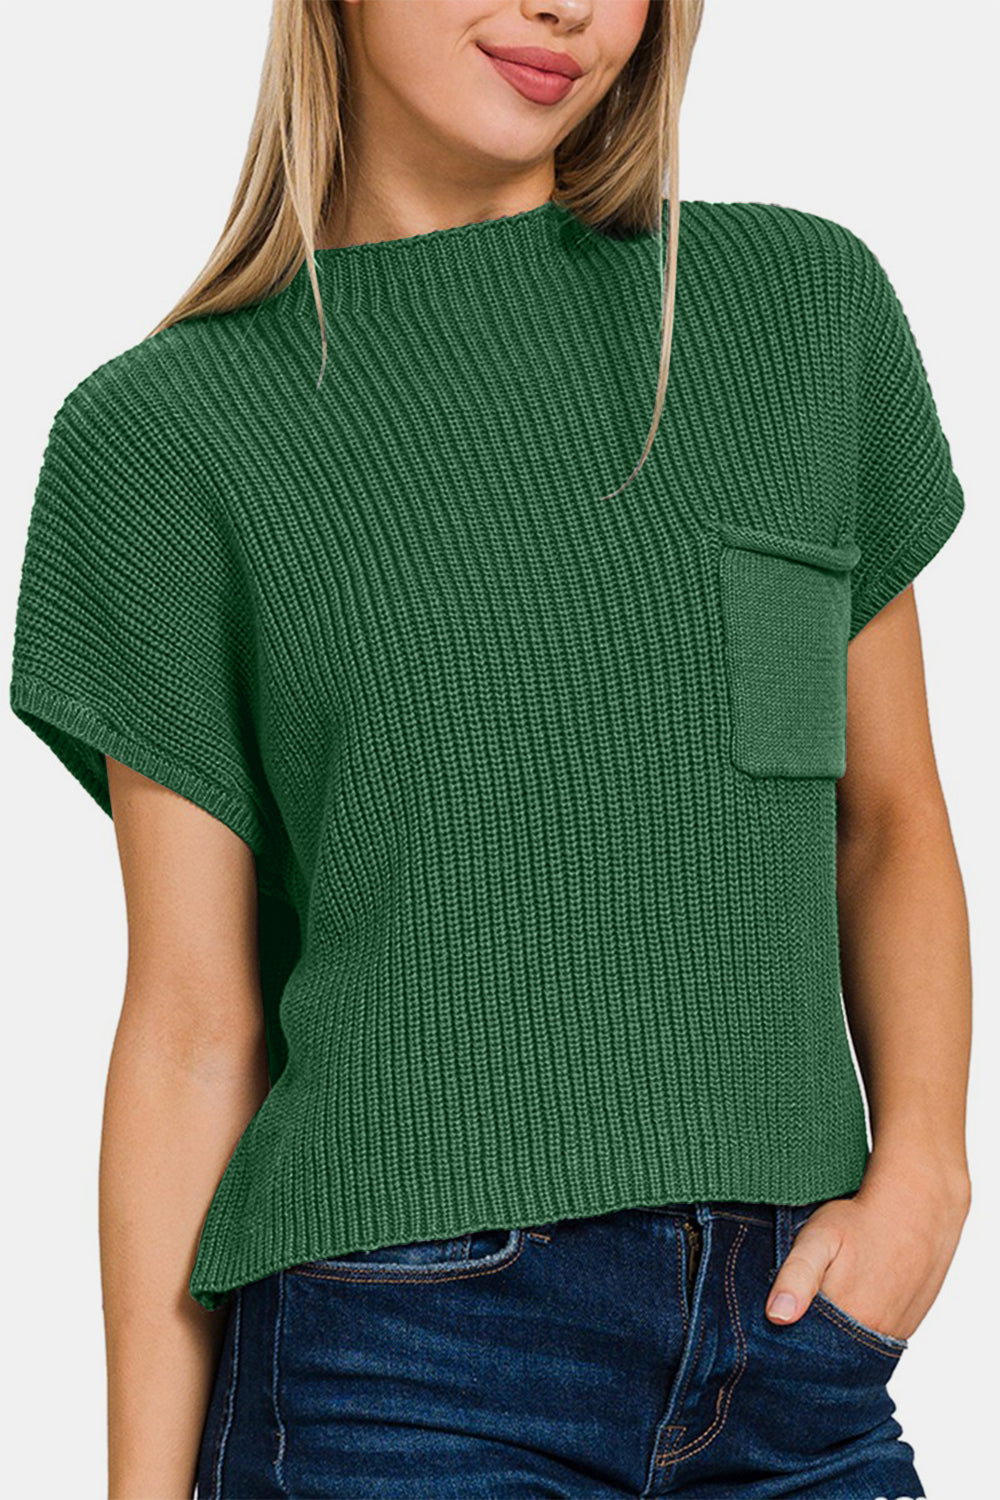 TEEK - Green Mock Neck Short Sleeve Cropped Sweater SWEATER TEEK Trend   